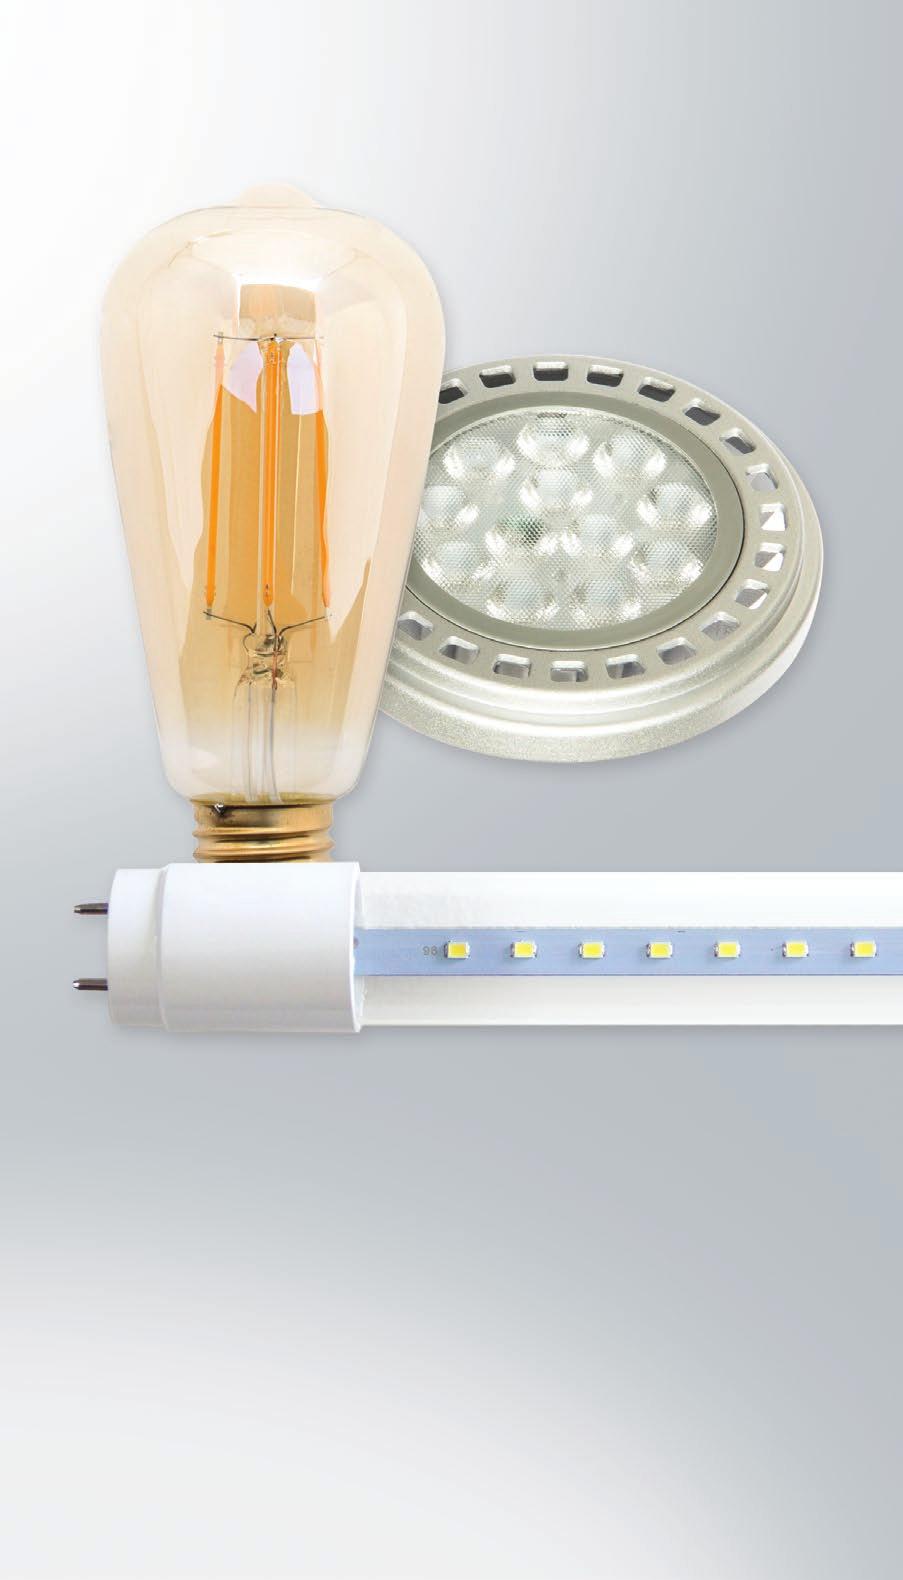 CATÁLOGO 2018 V 1.0 Con nuestras lámparas retrofit de tecnología LED podrás ahorrar hasta un 90% en tu consumo. Se encuentran disponibles en un amplia gama de bases, potencias y formatos.